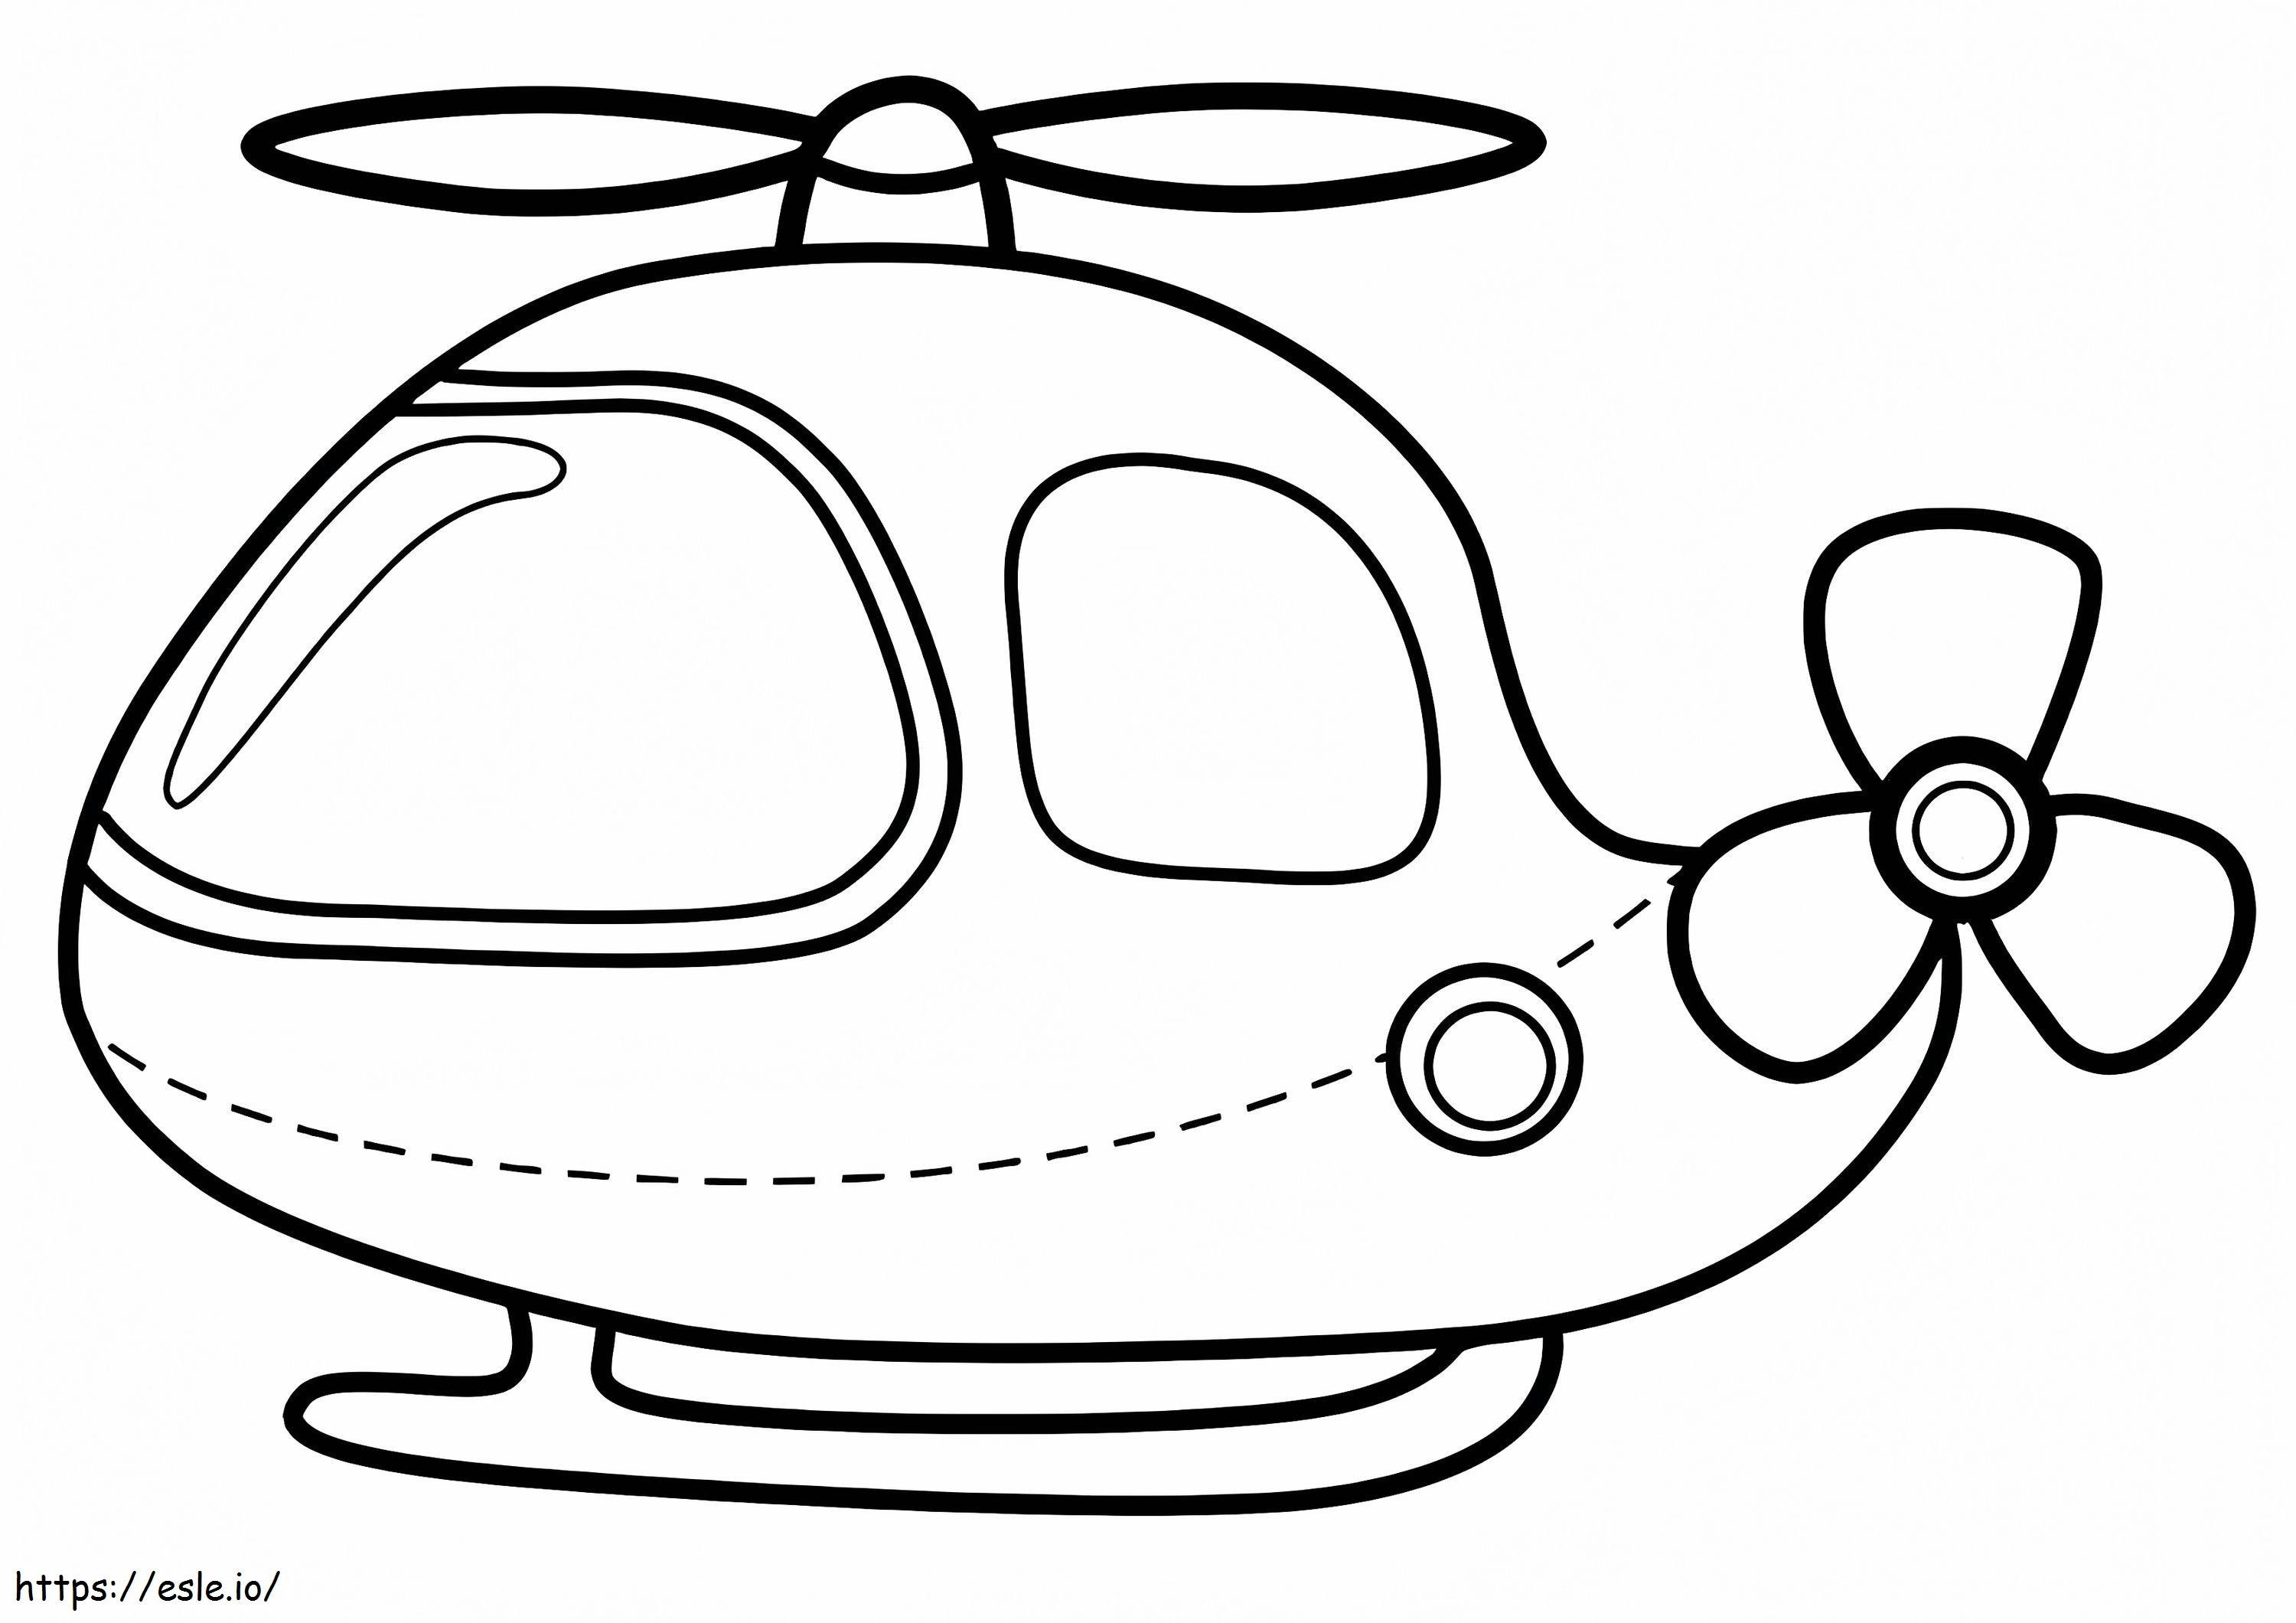  Un bonito helicóptero A4 E1600074315918 para colorear